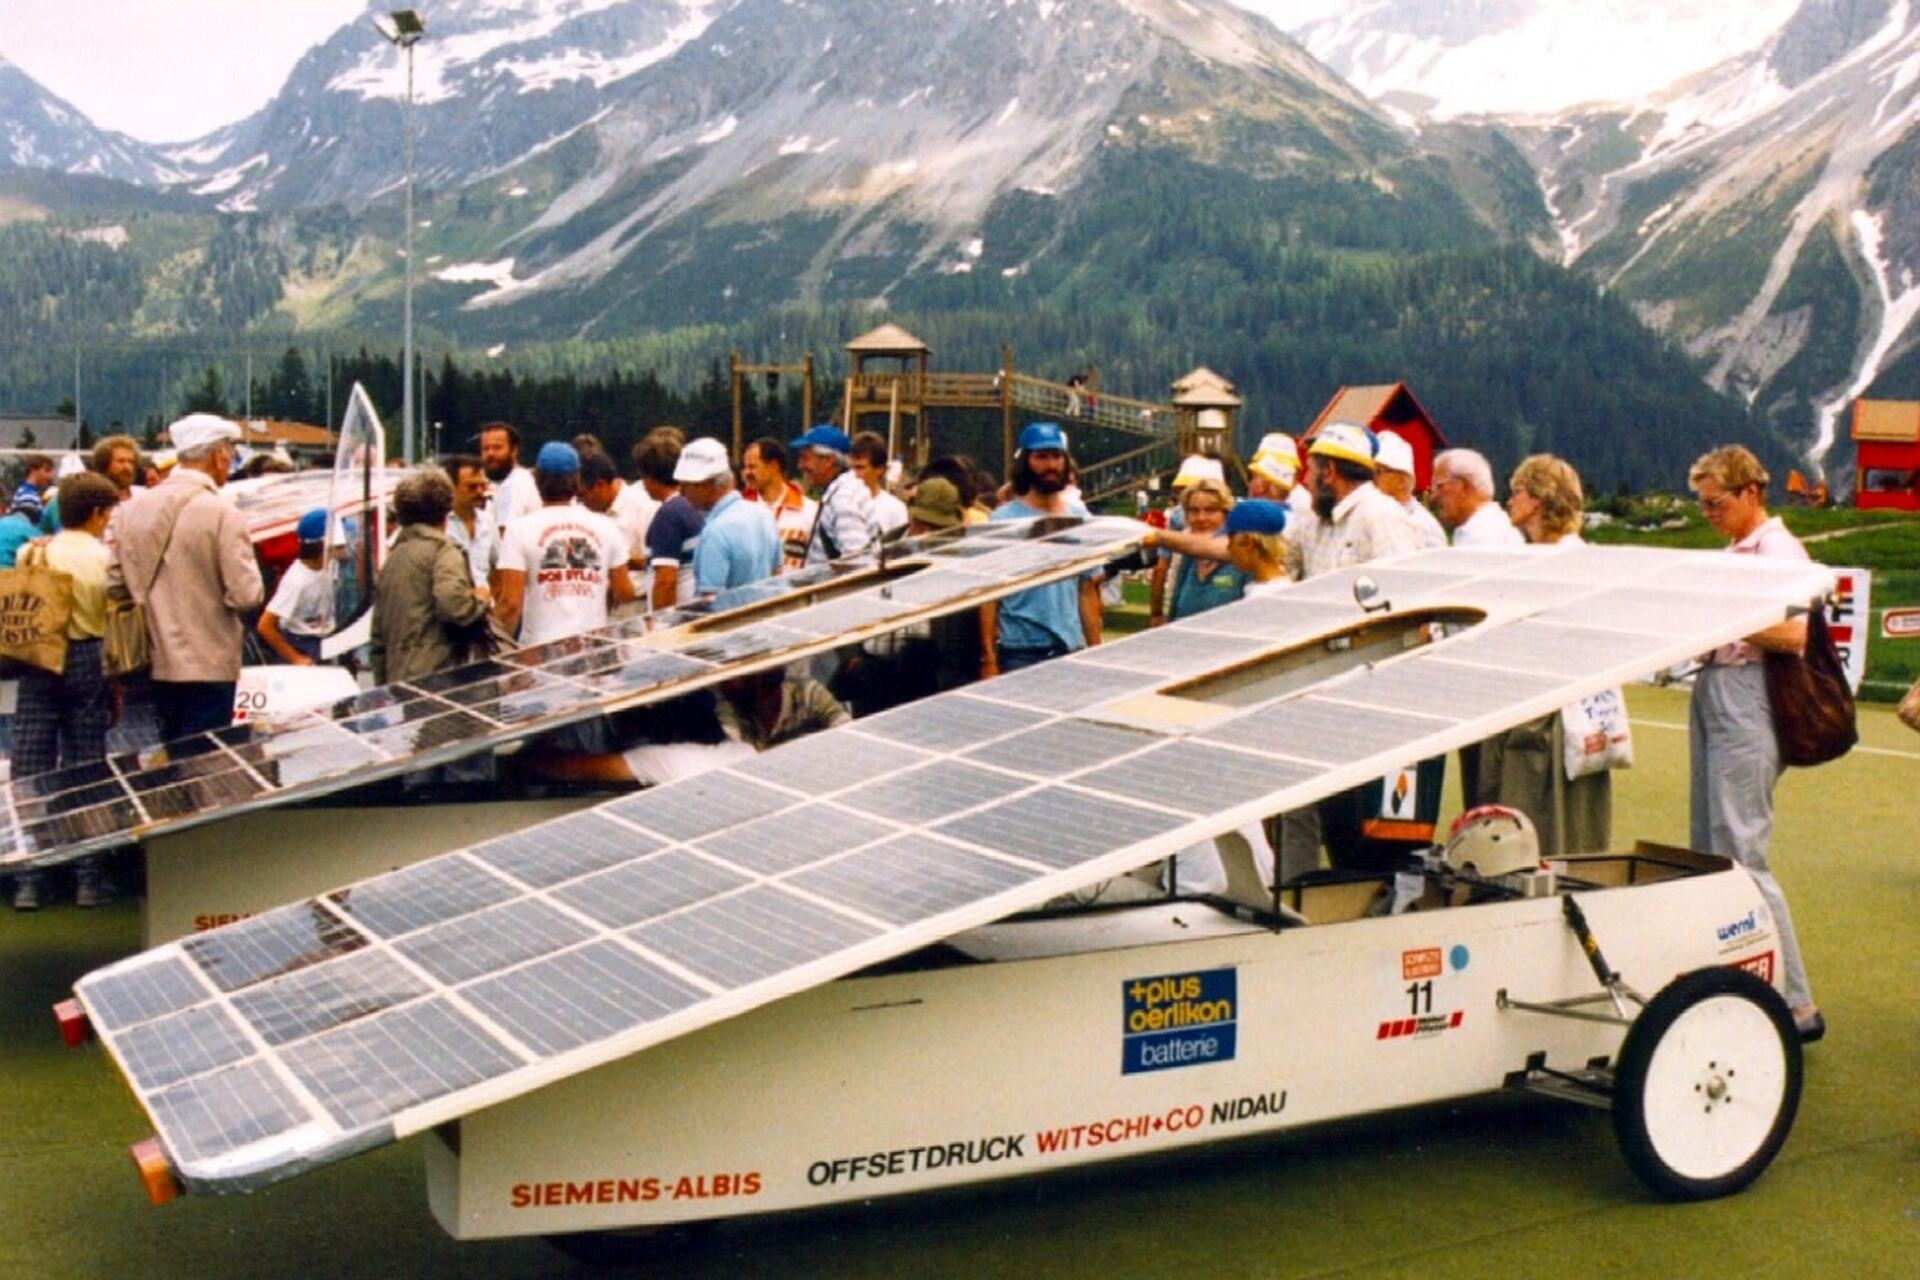 Michèle Kottelat: “Tour de Sol” güneş enerjisiyle çalışan araçların ilk rallisiydi